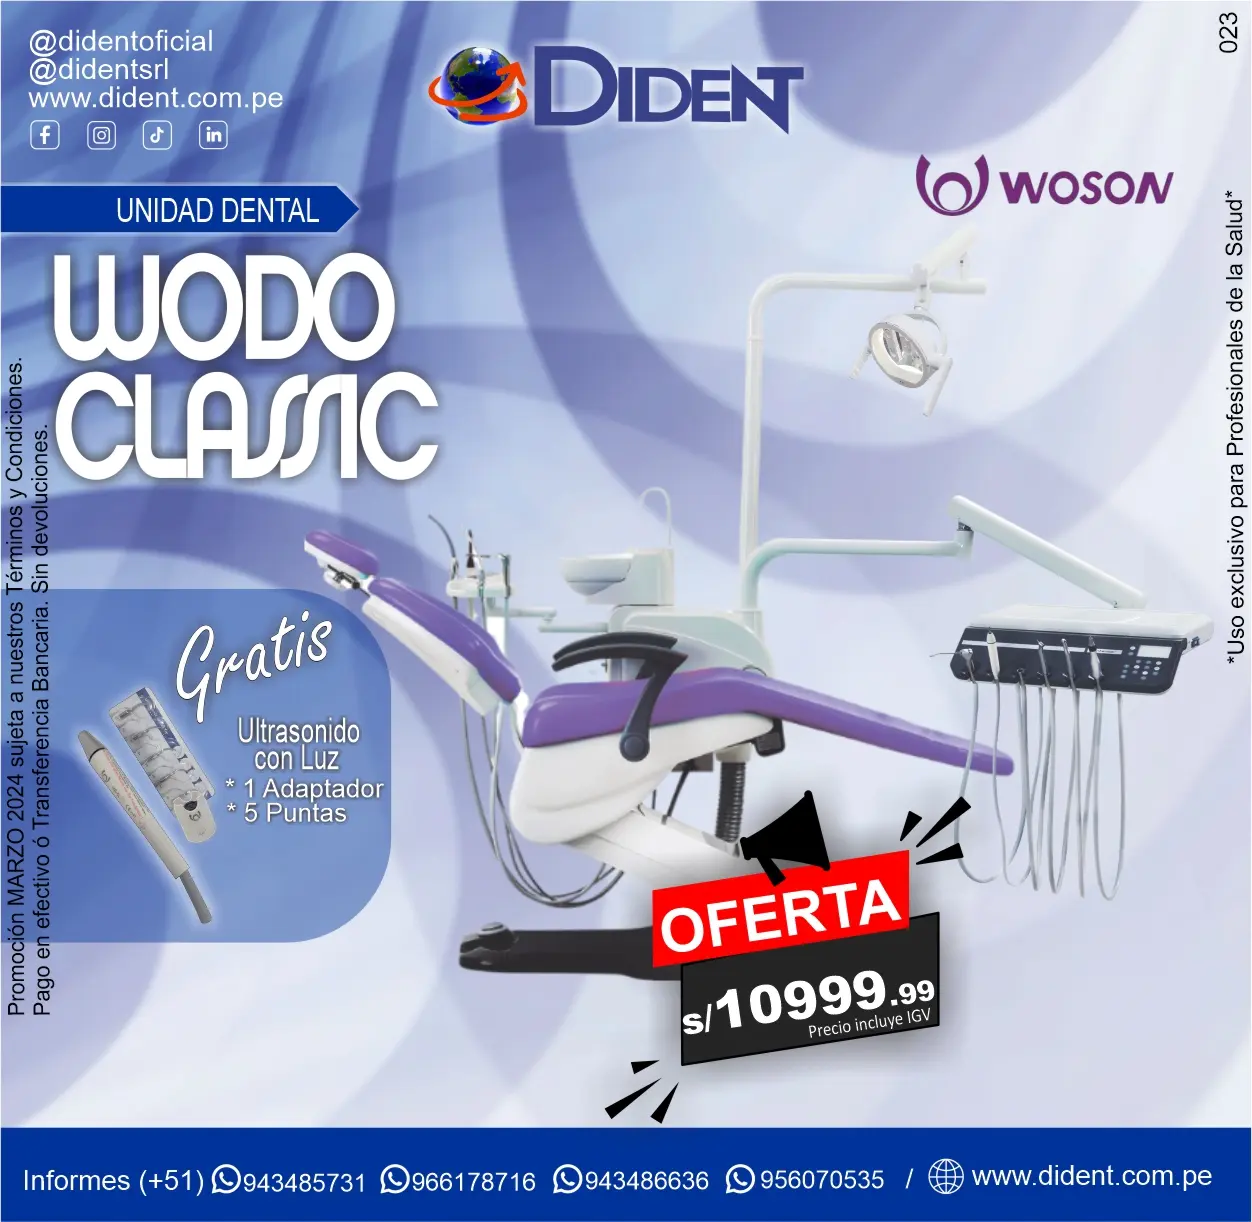 Unidad Dental Wodo Classic Woson + Gratis Ultrasonido con luz + 1 Adaptador +5 Puntas